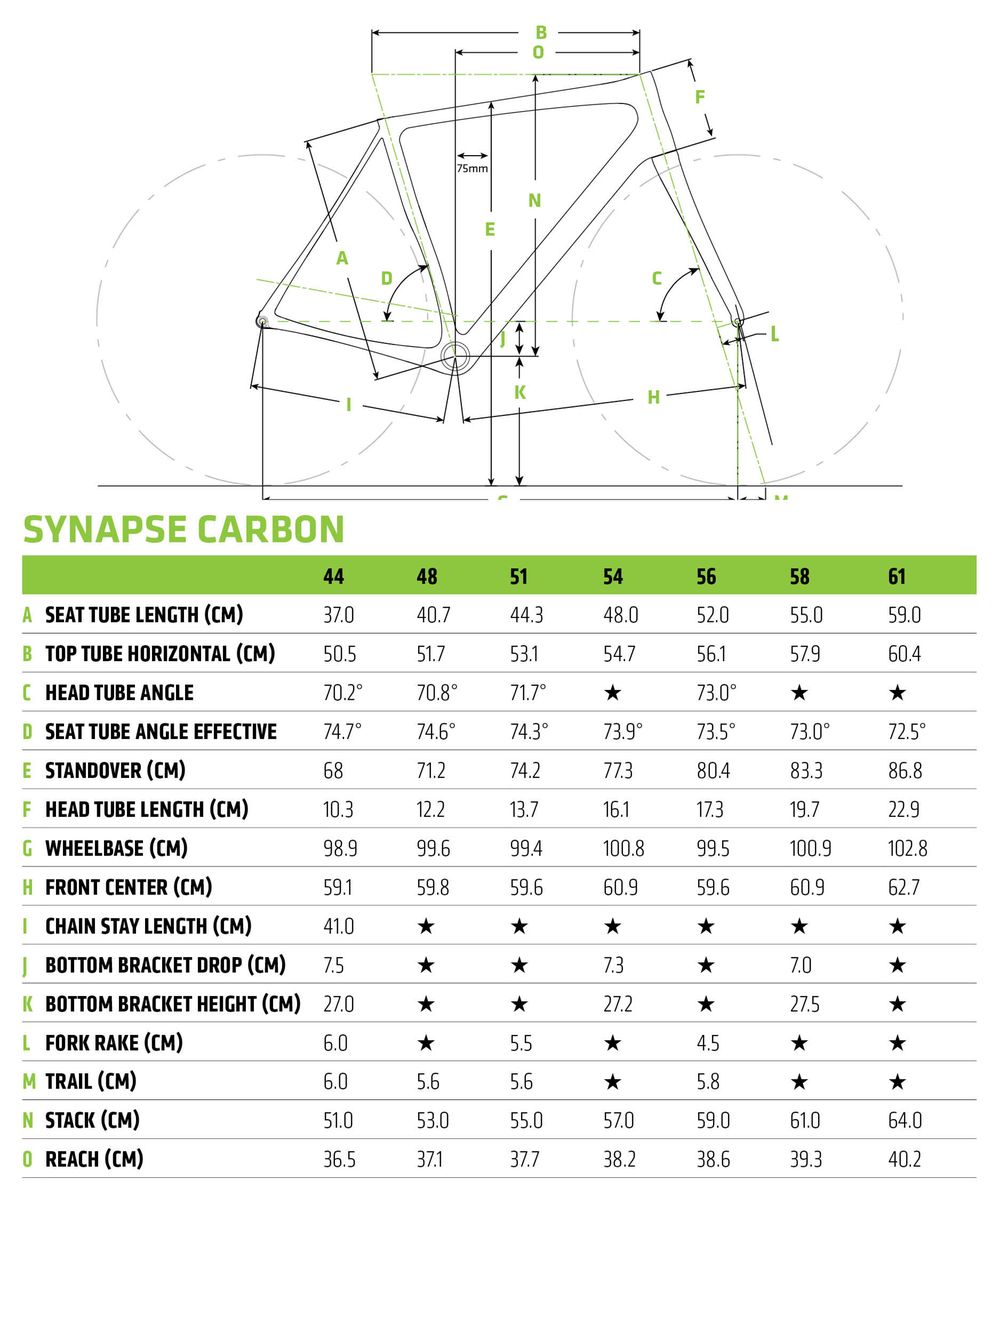 Synapse Carbon Disc 105 SE - 